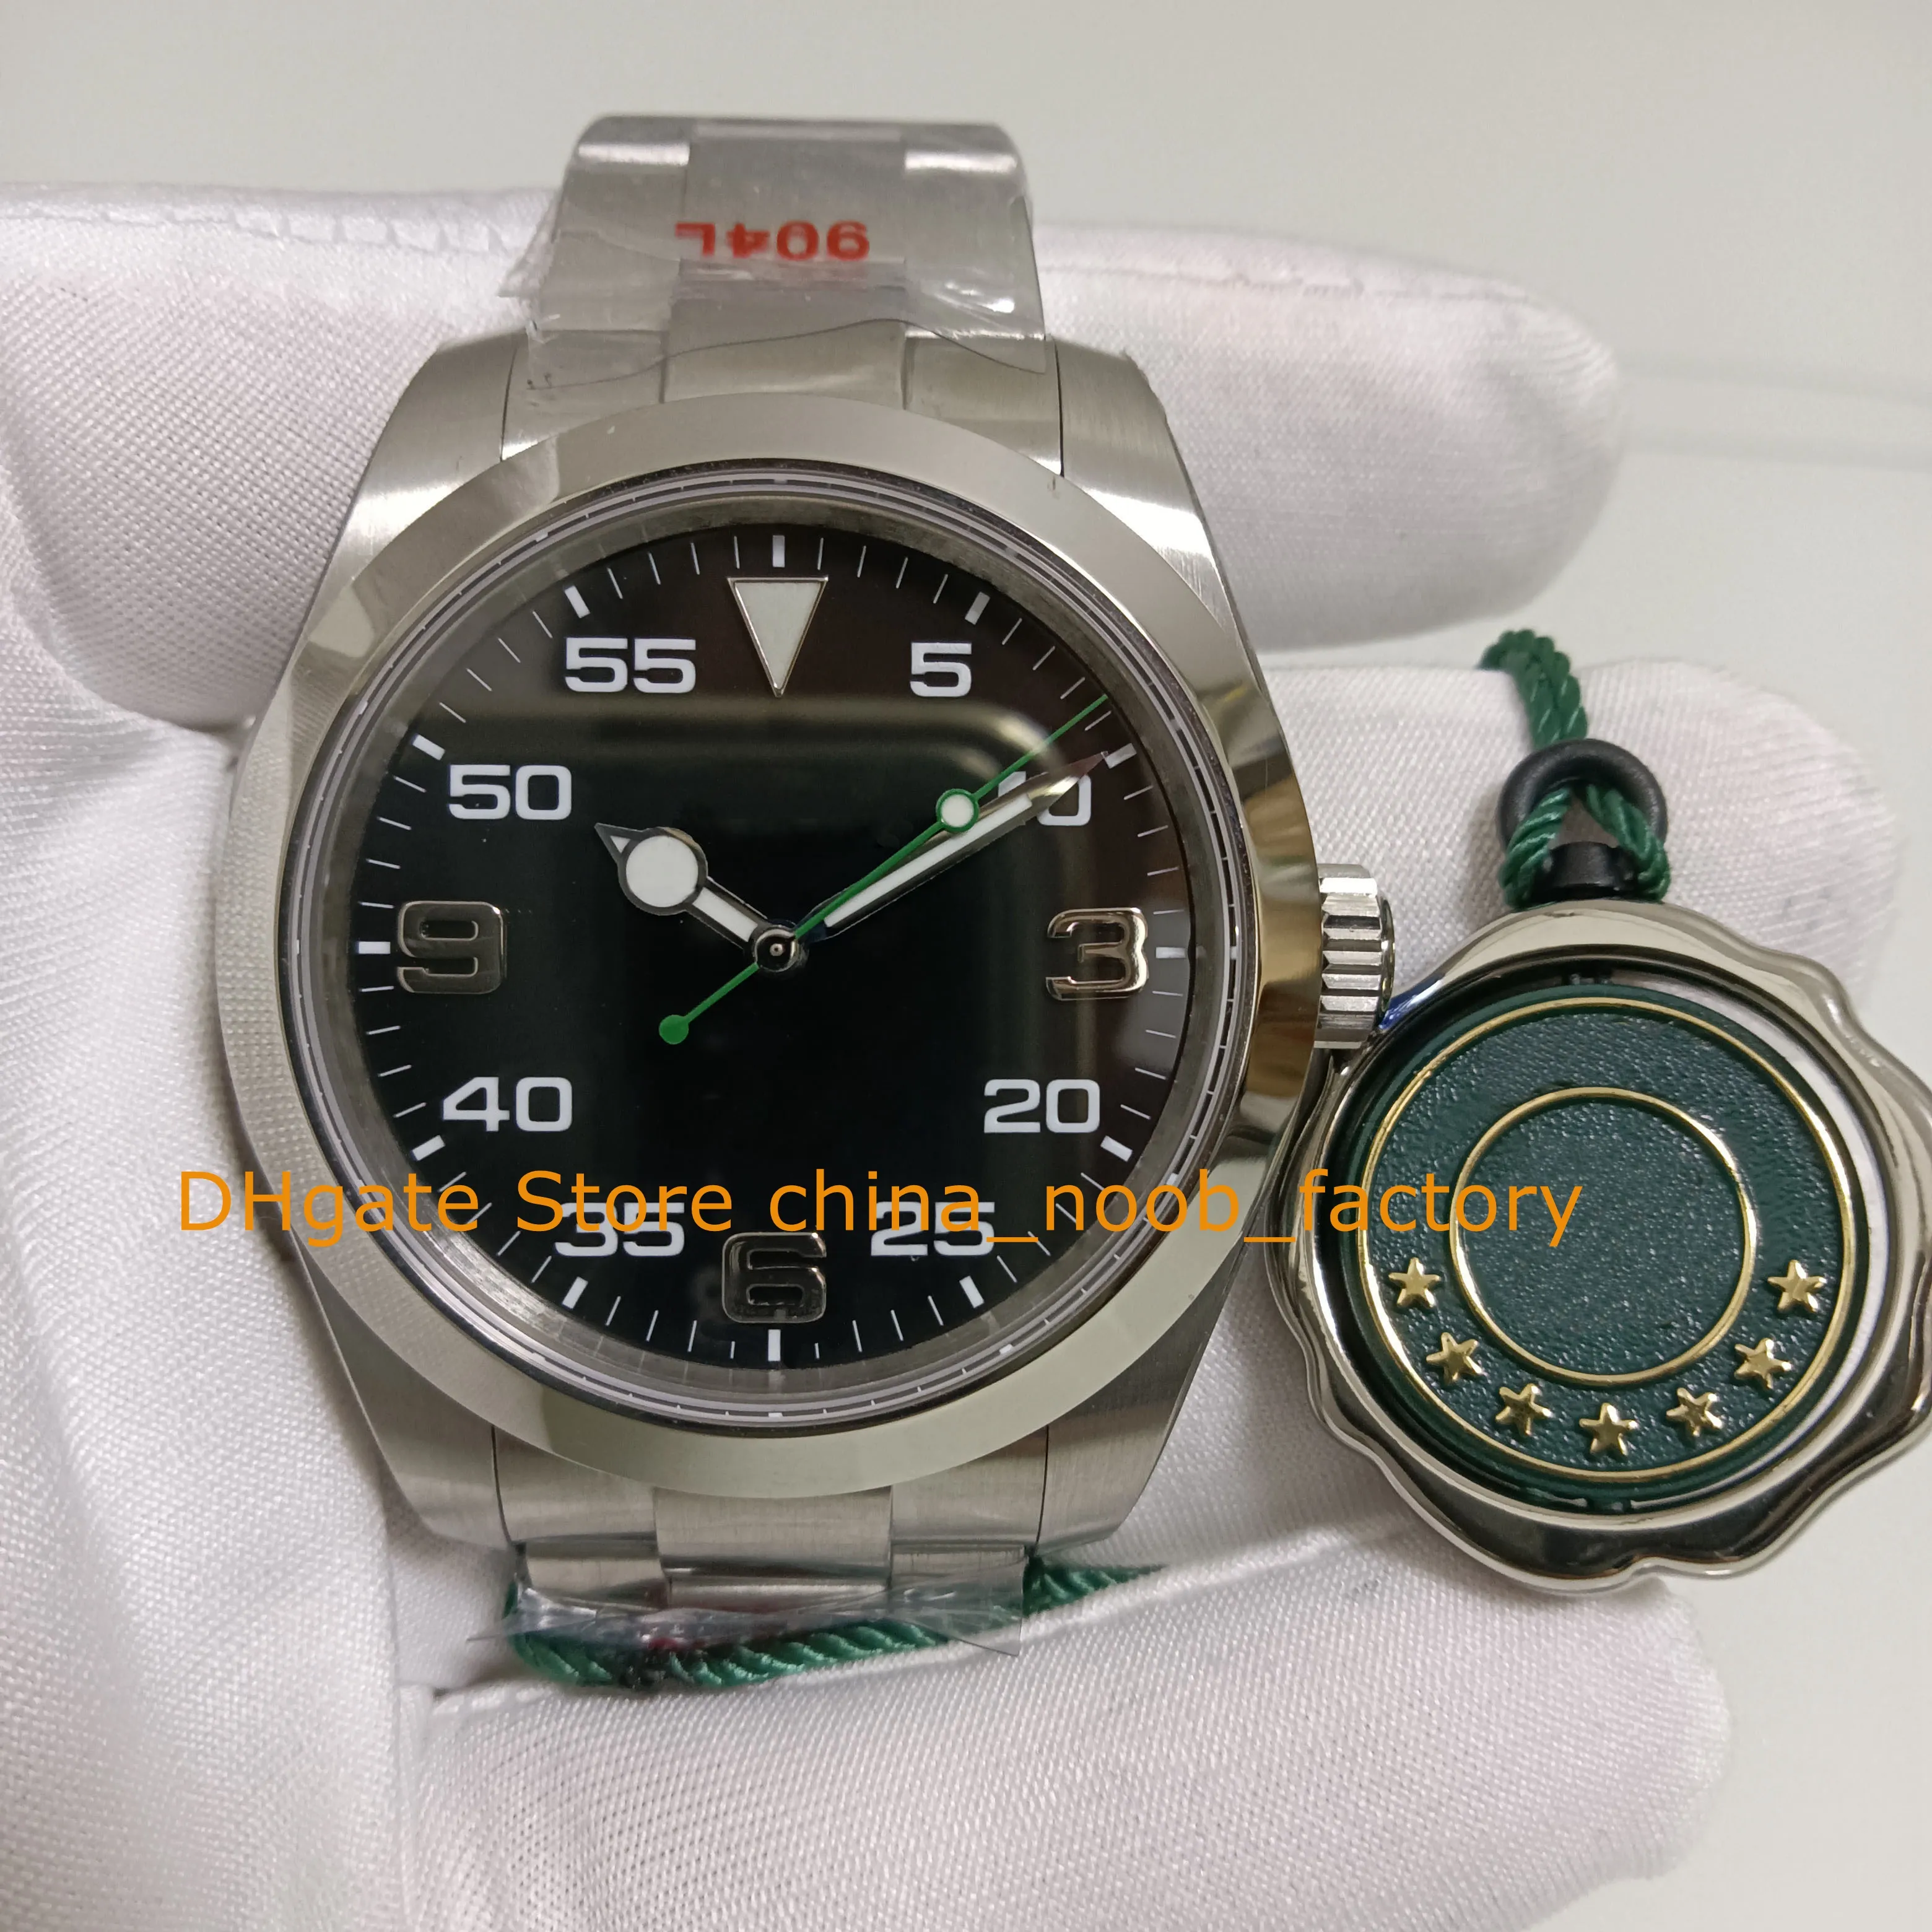 Mens Automático Relógio Men 40mm Sapphire Glass Black Dial Bracelete de aço inoxidável v12 cal.3131 MOVIME